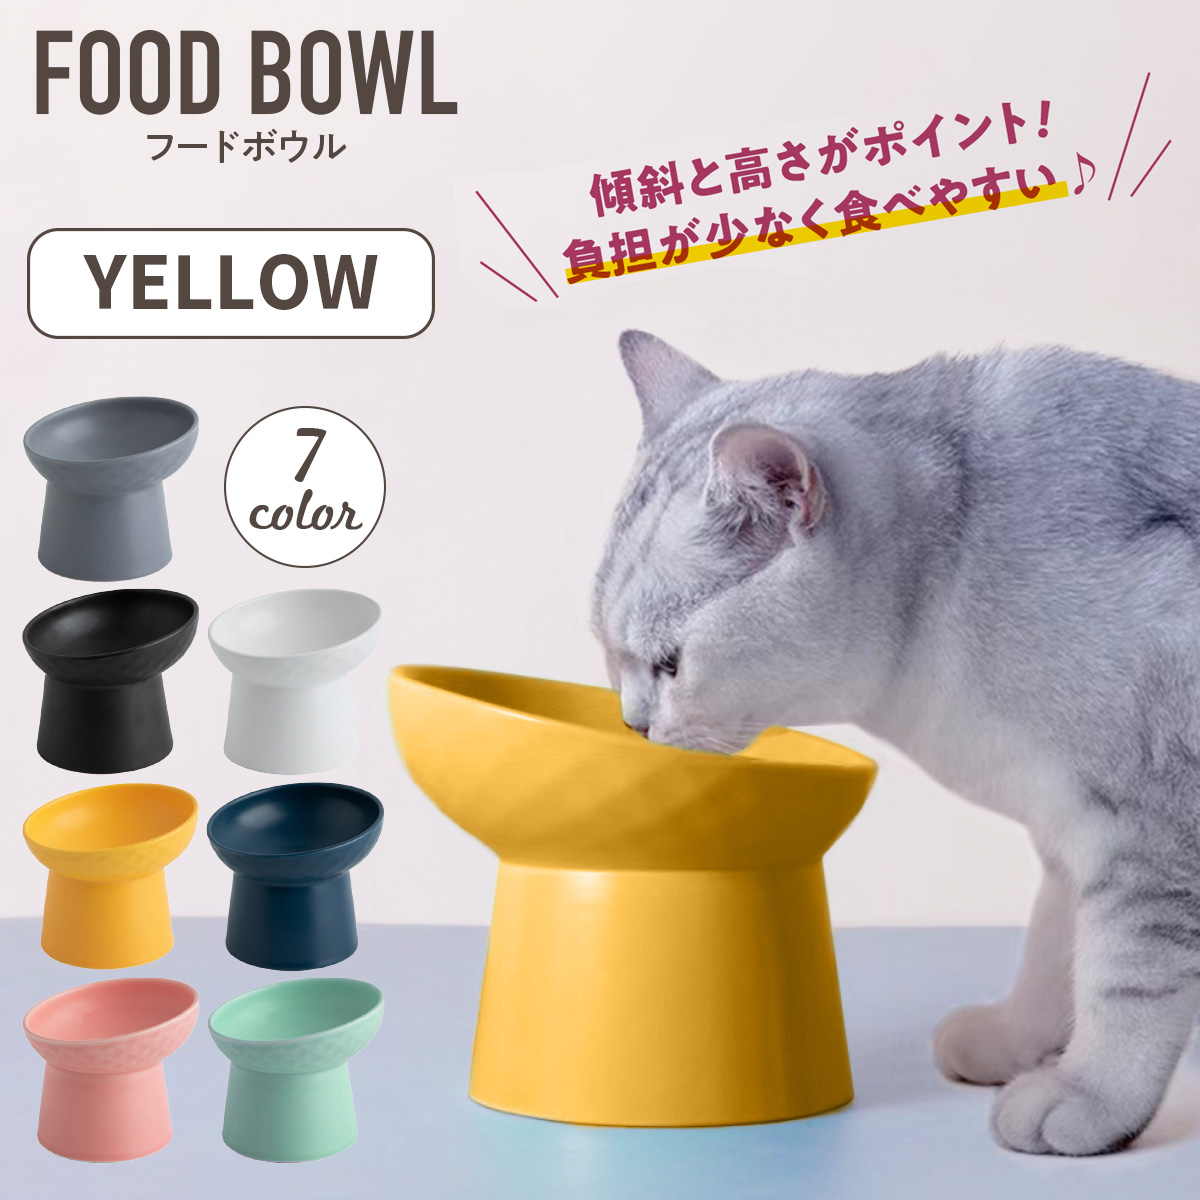 猫 食器 フードボウル 犬 陶器 ペットフードボウル セラミック 餌入れ  猫用 猫食器